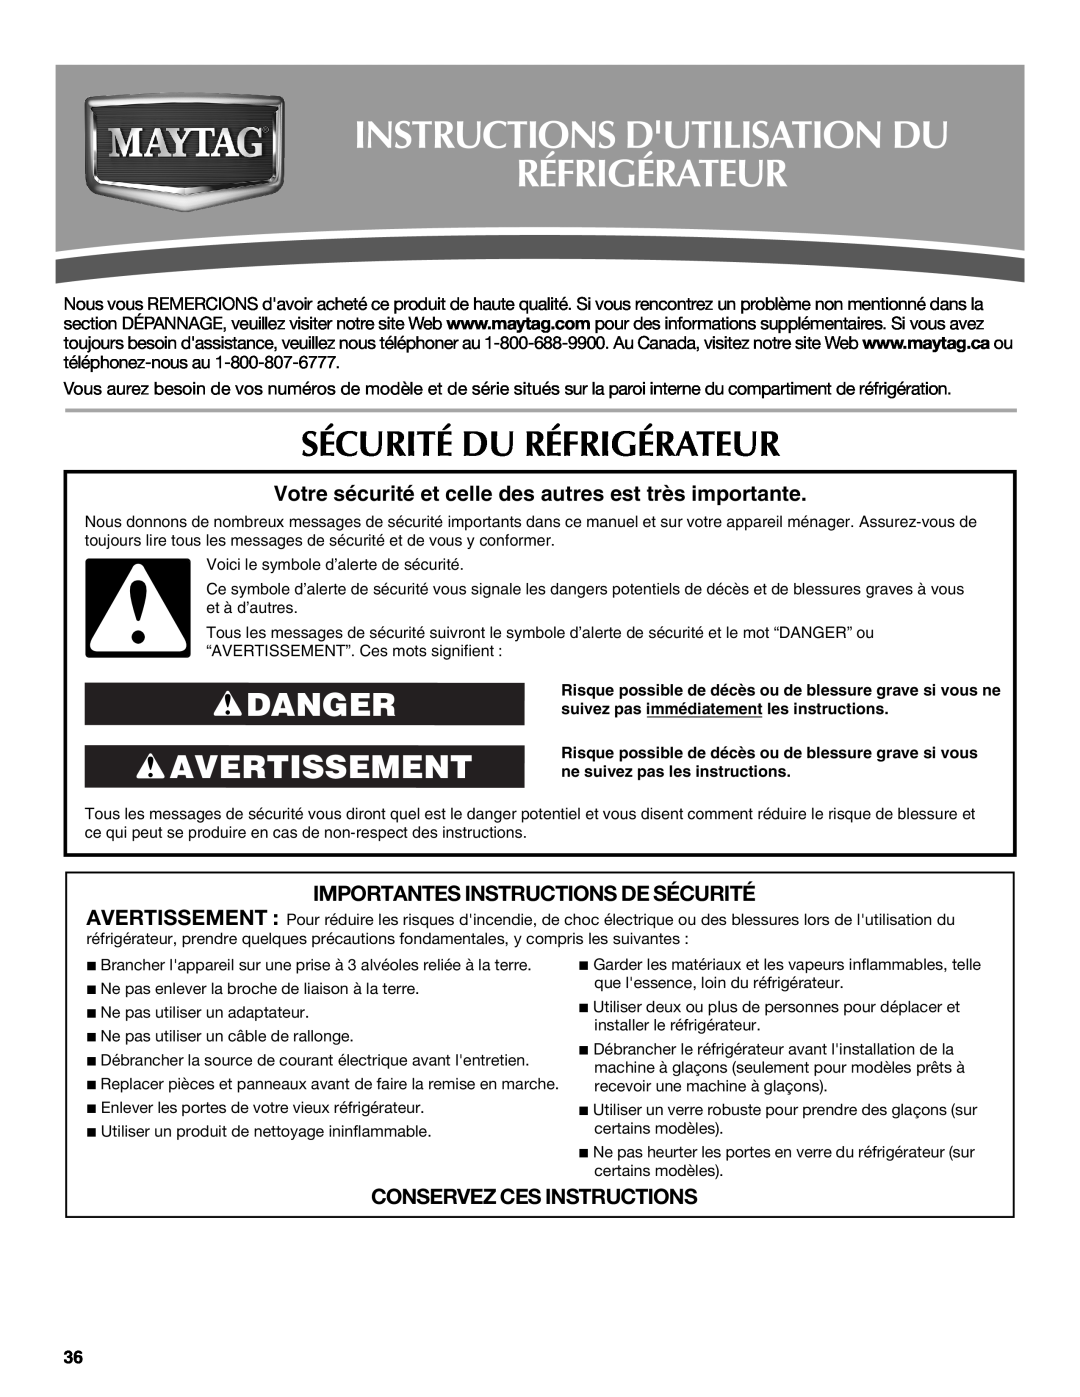 Maytag W10321477A Instructions Dutilisation Du Réfrigérateur, Sécurité Du Réfrigérateur, Danger Avertissement 